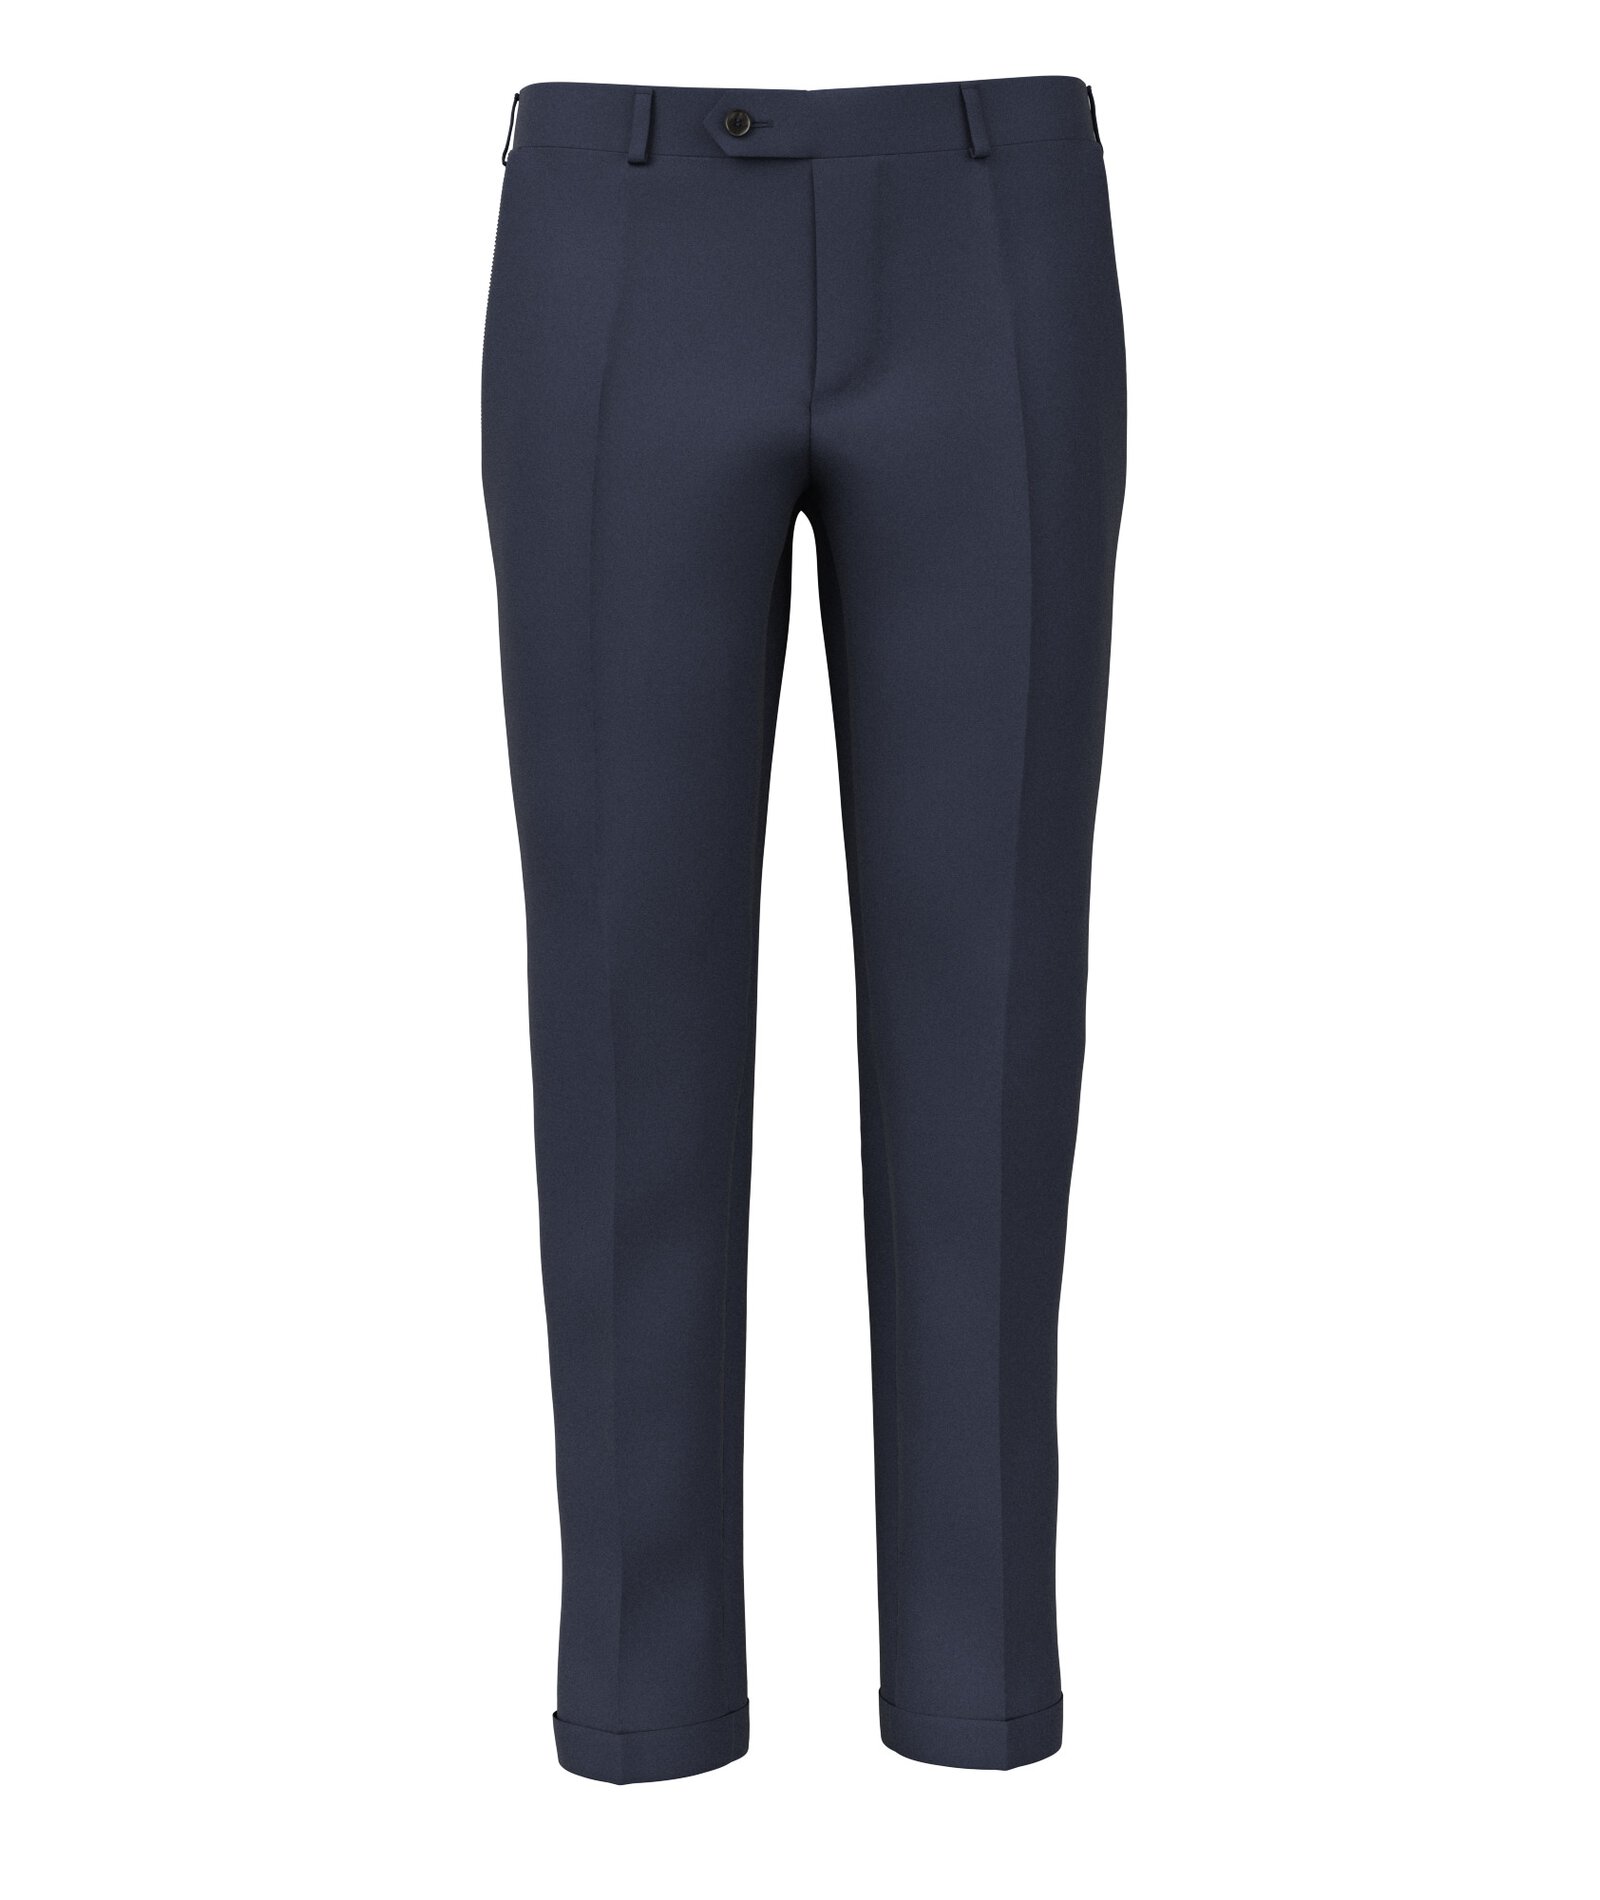 Image of Pantaloni da uomo su misura, Lanificio Zignone, Blu Canneté Pura Lana, Quattro Stagioni | Lanieri